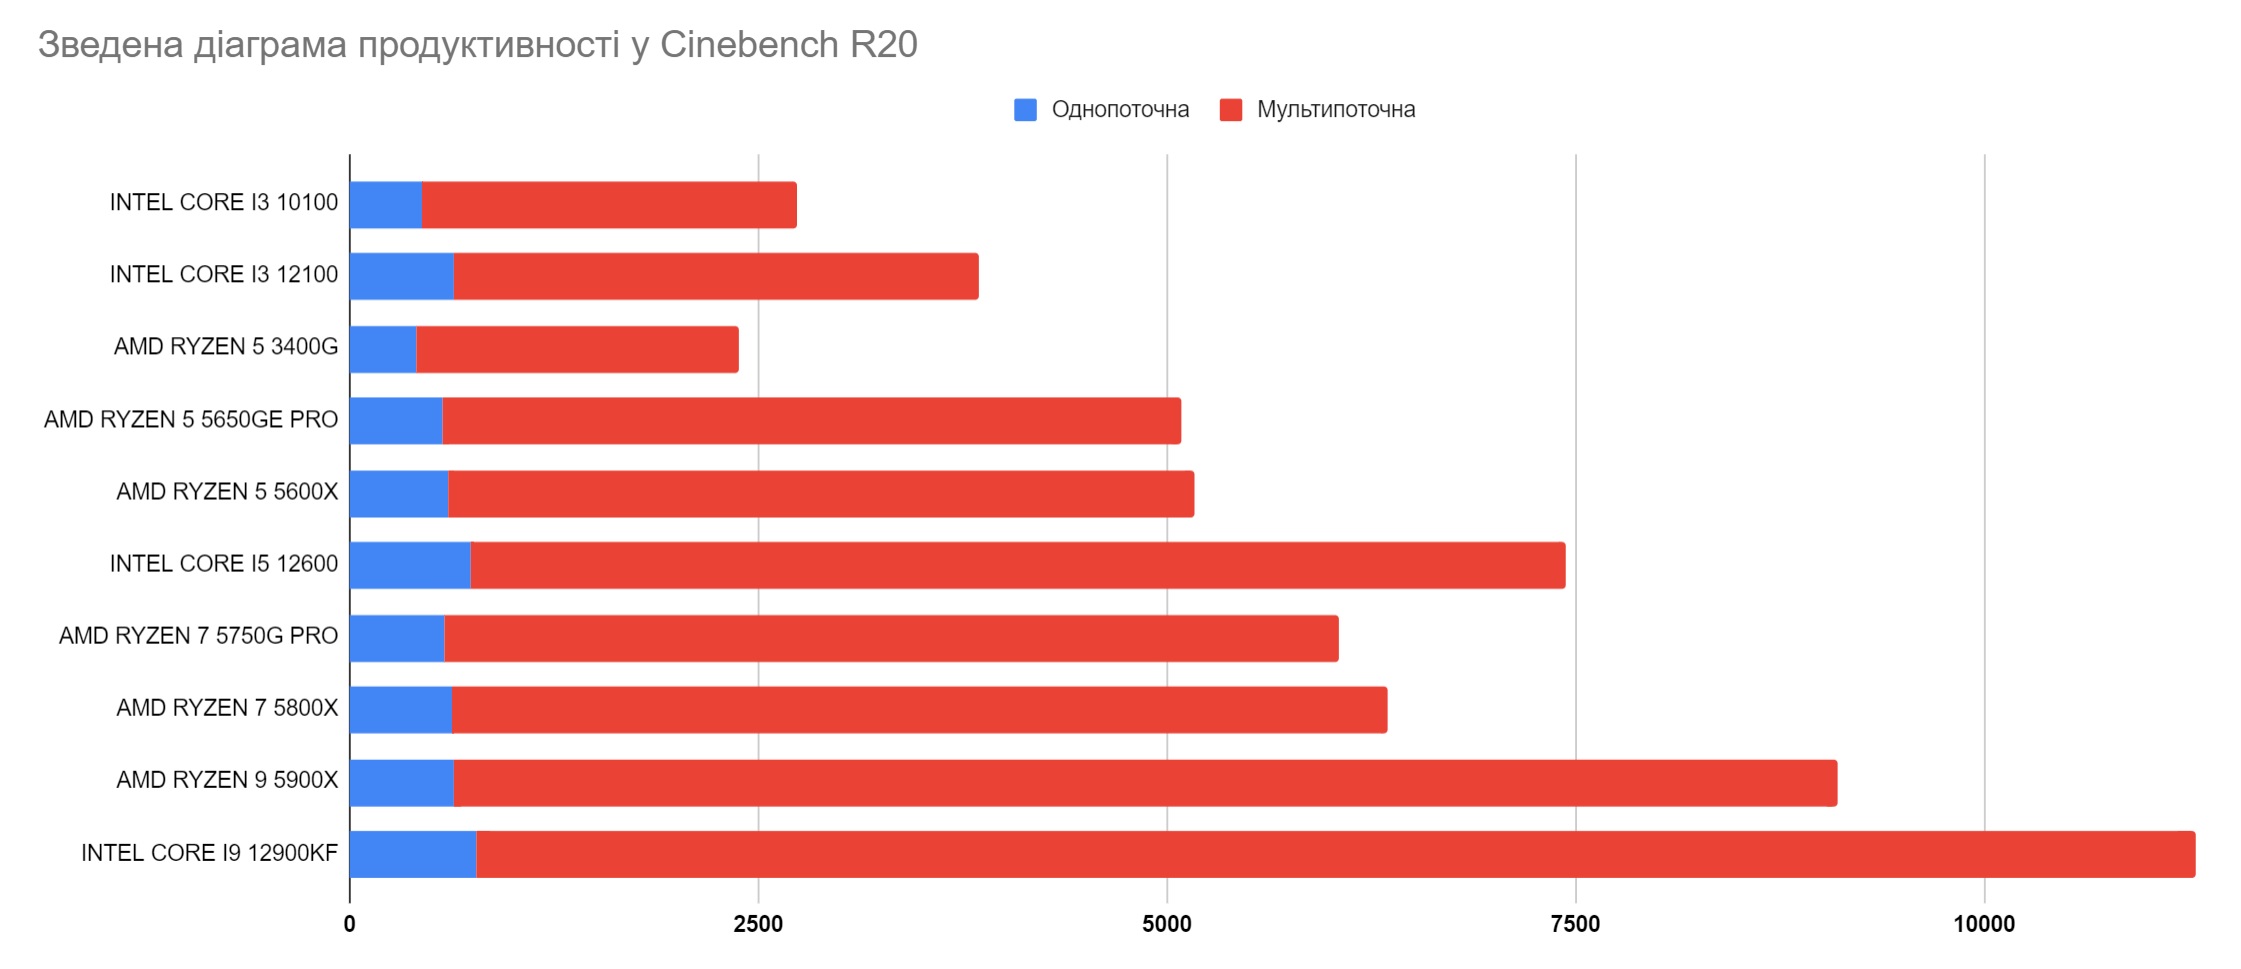 Таблиця продуктивності процесорів у Cinebench R20